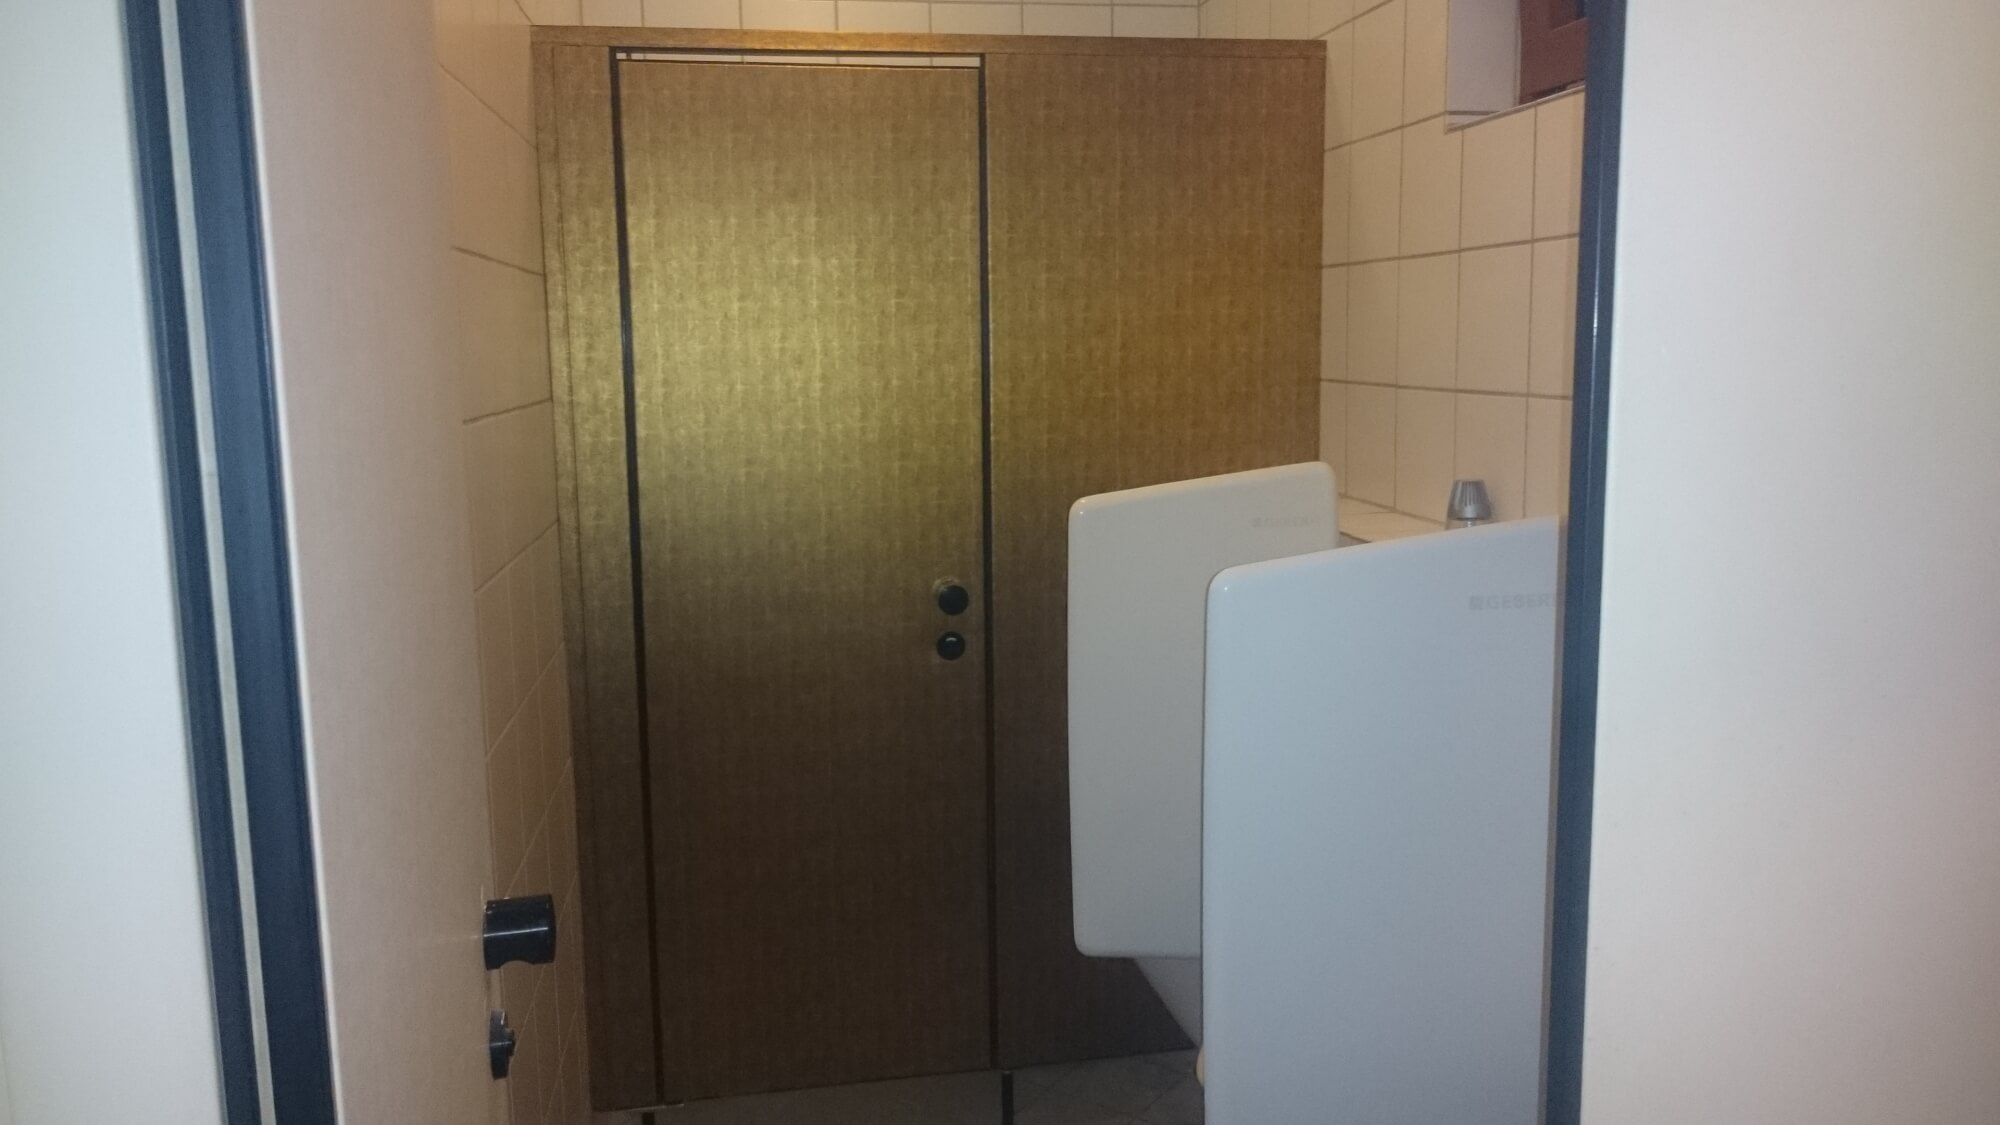 Gastronomie Restaurant Türen der Toiletten mit Folie in Bronze Gold beschichten 01